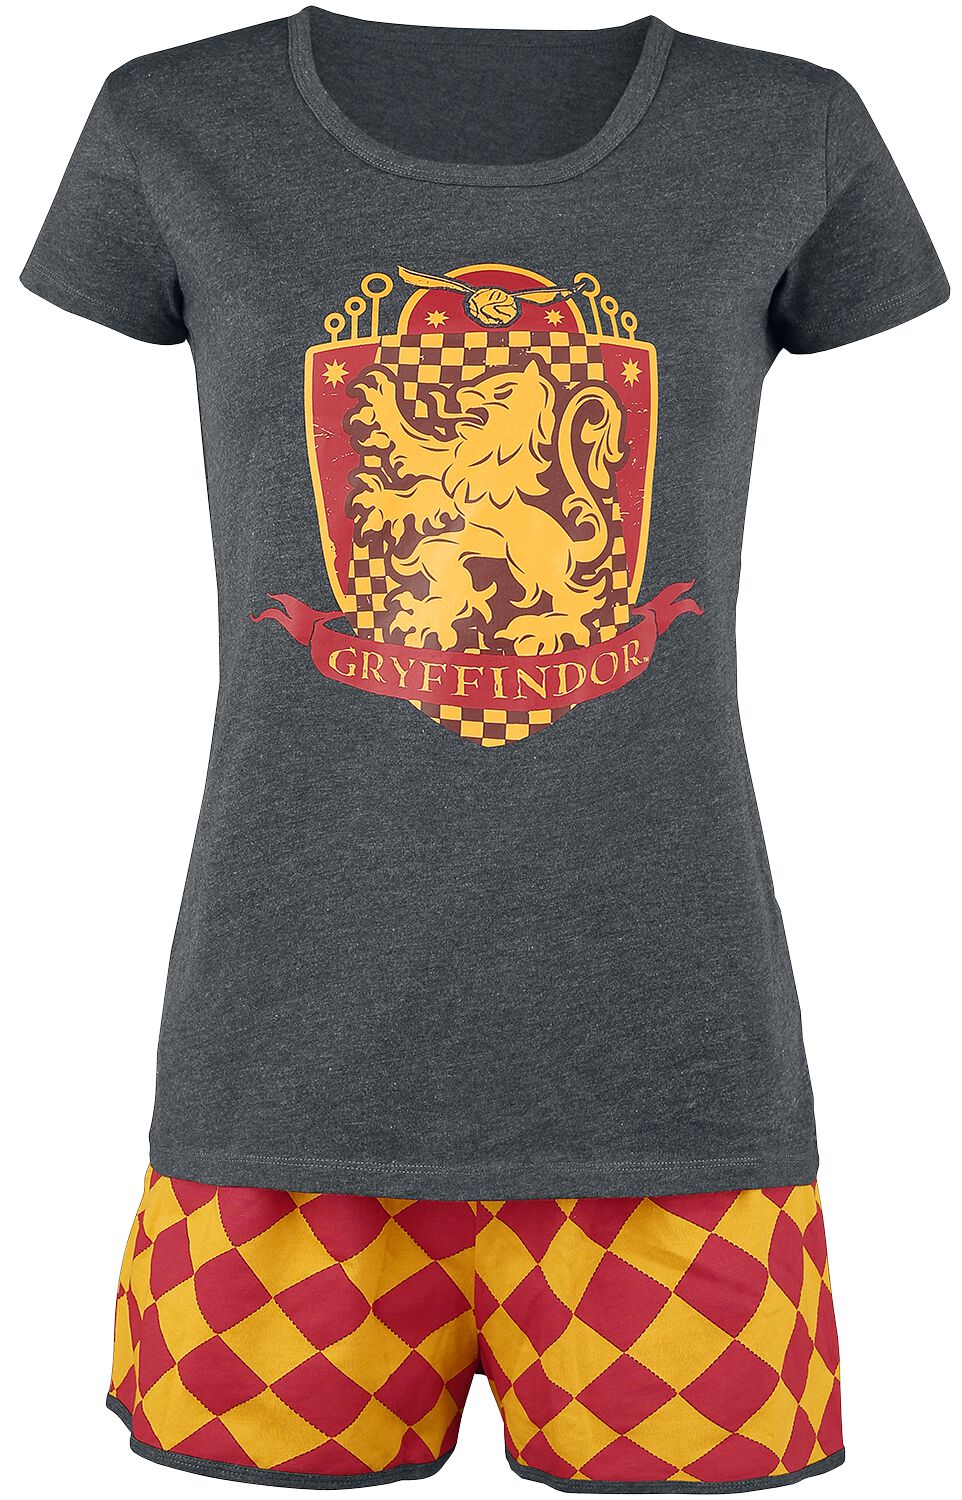 Harry Potter Schlafanzug - Gryffindor Quidditch - XS bis 5XL - für Damen - Größe S - grau/rot/gelb  - EMP exklusives Merchandise! von Harry Potter